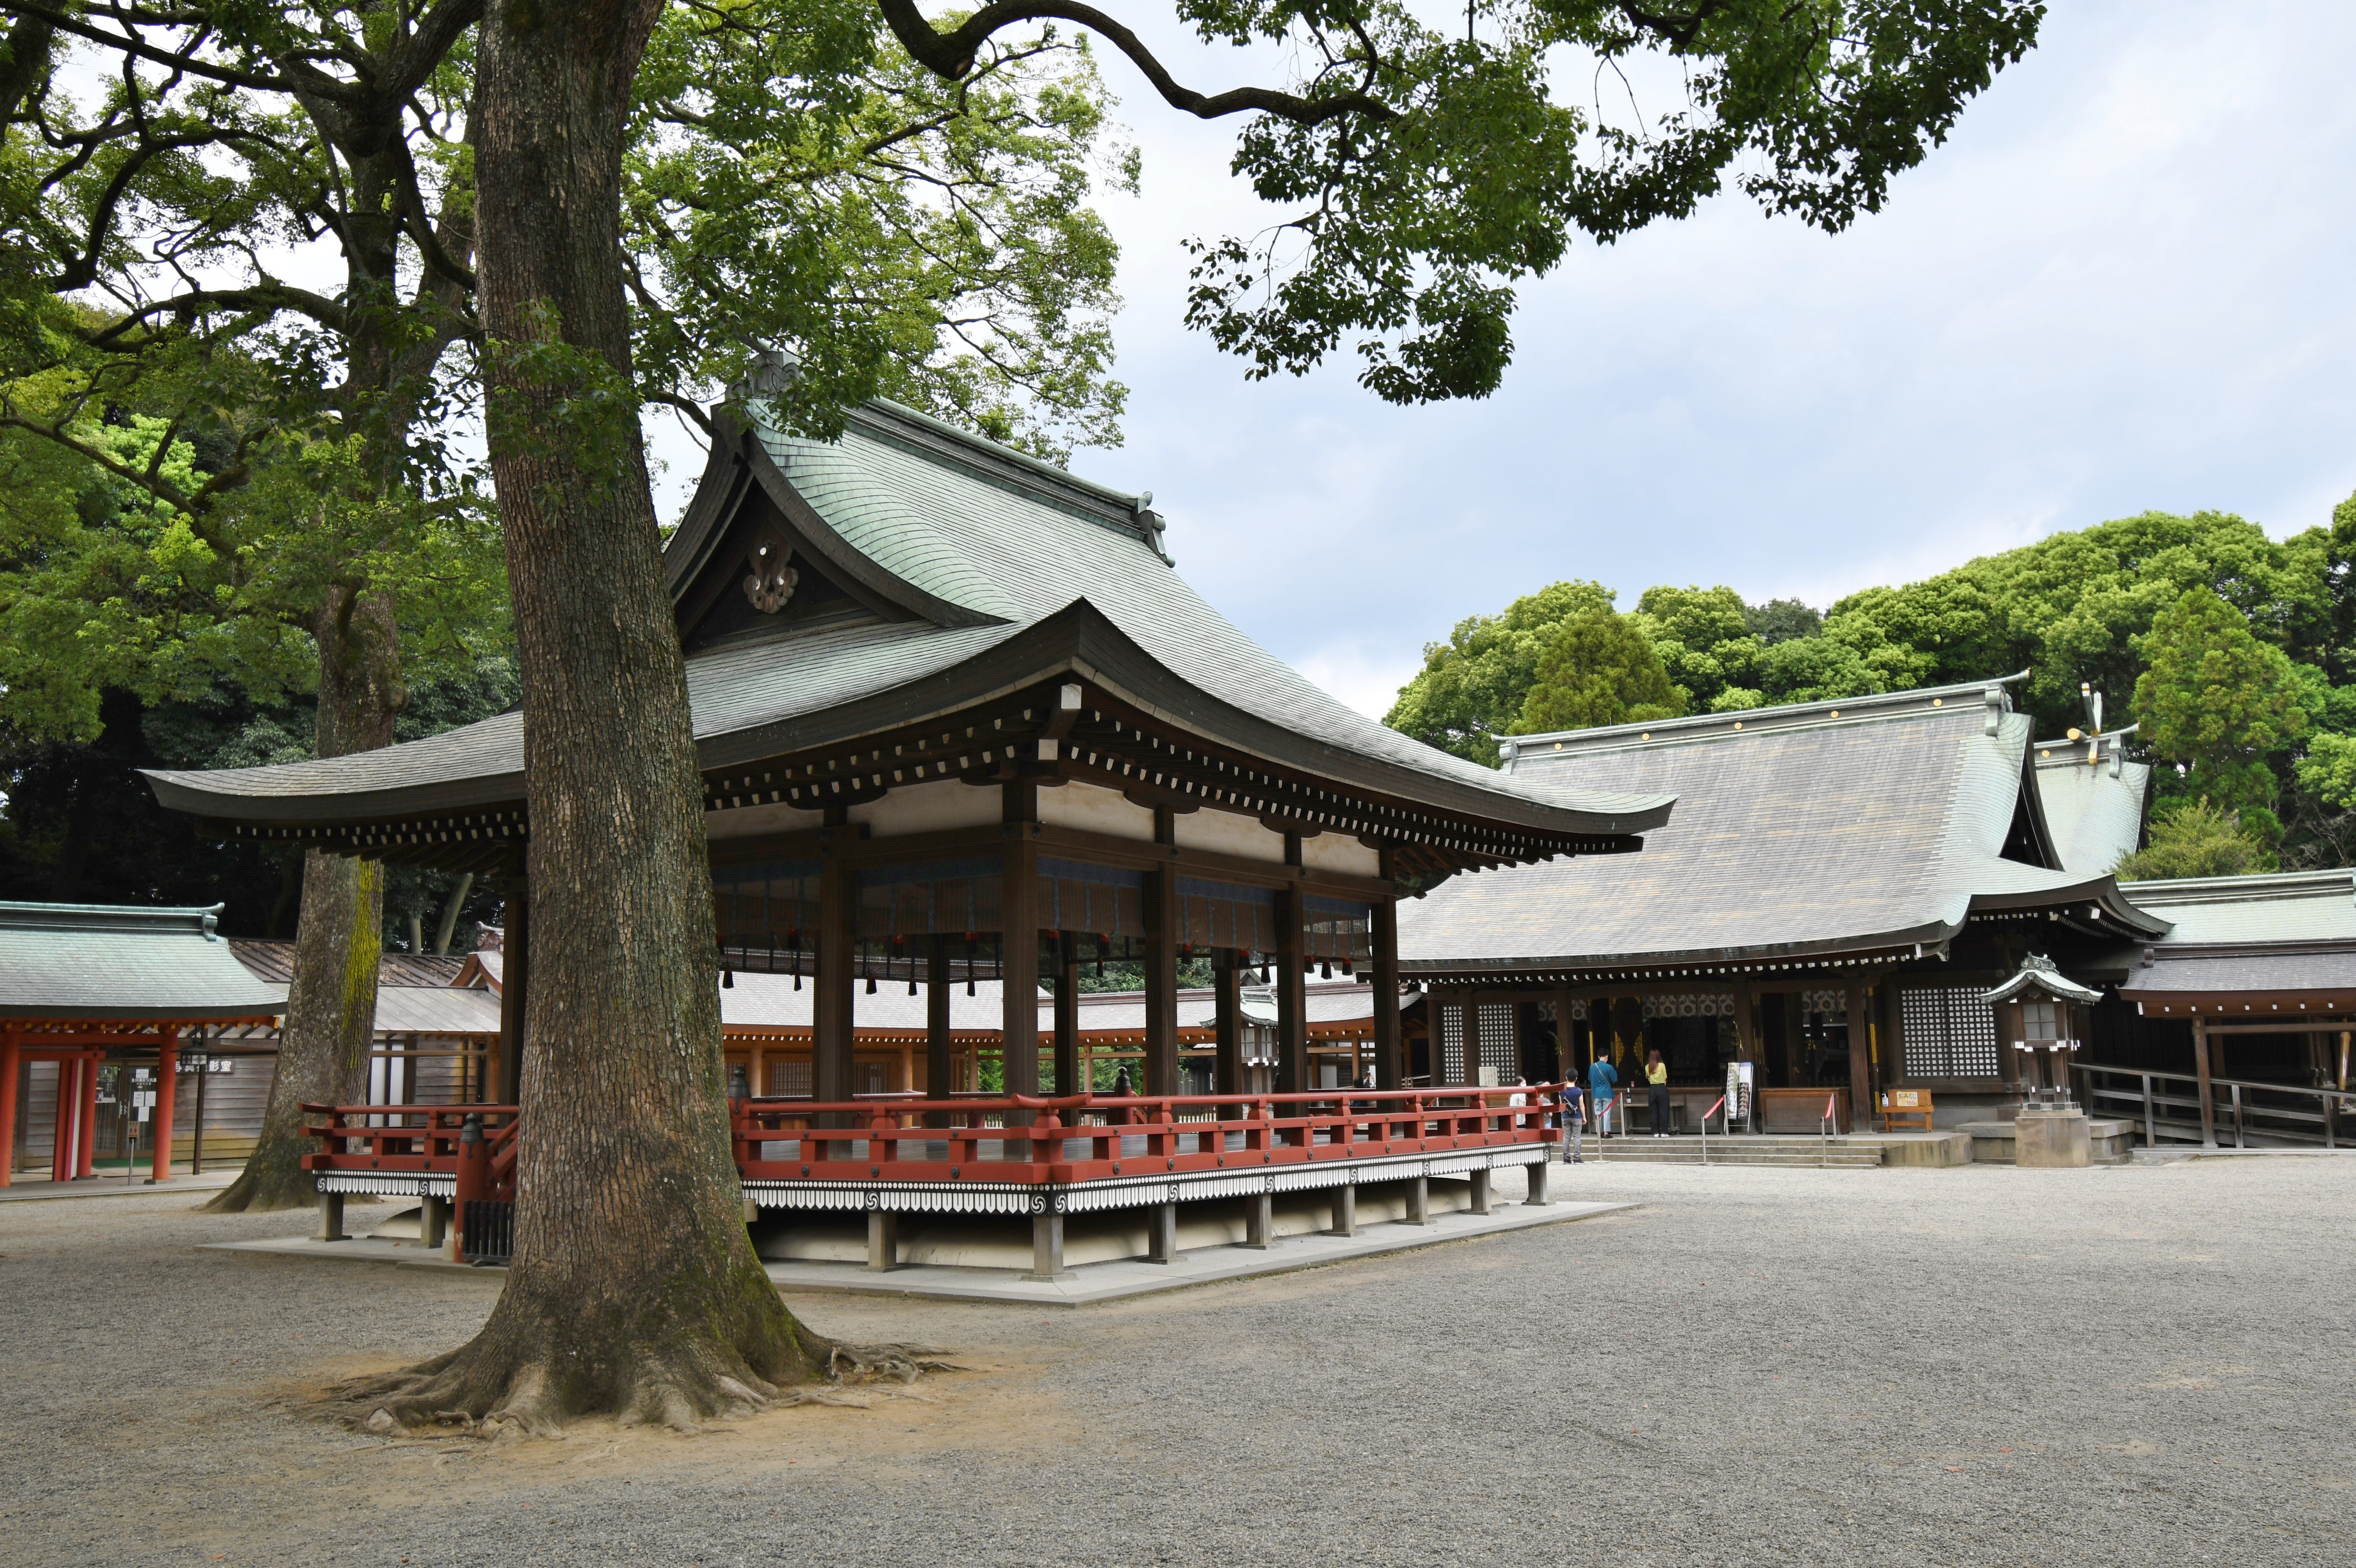 氷川神社 - Wikipedia